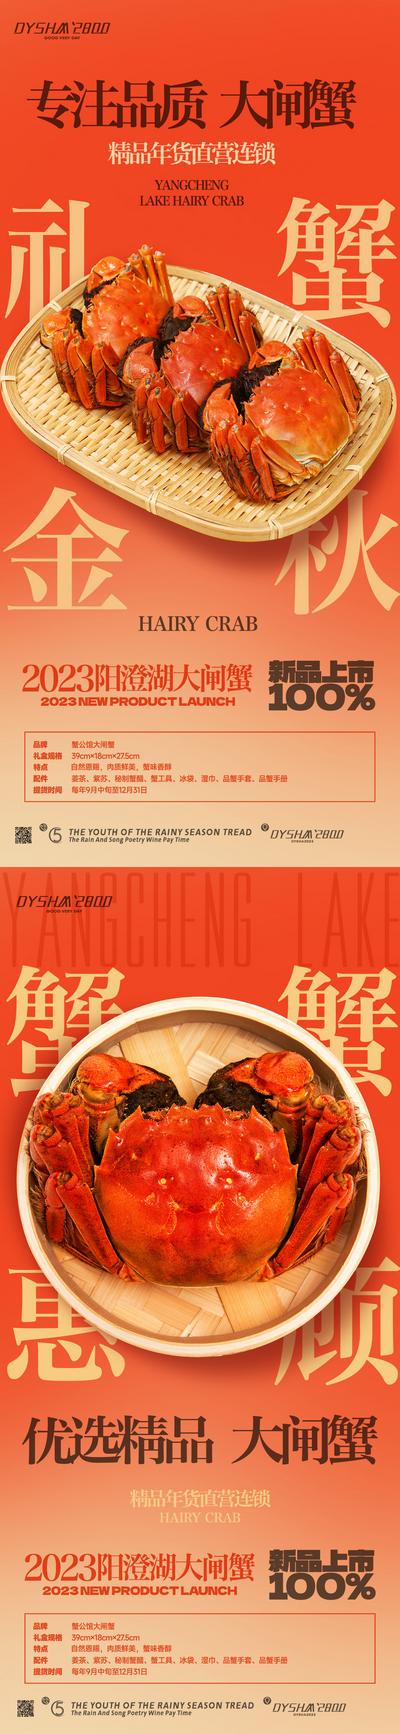 南门网 广告 海报 餐饮 大闸蟹 海鲜 螃蟹 礼盒 美味 美食 系列